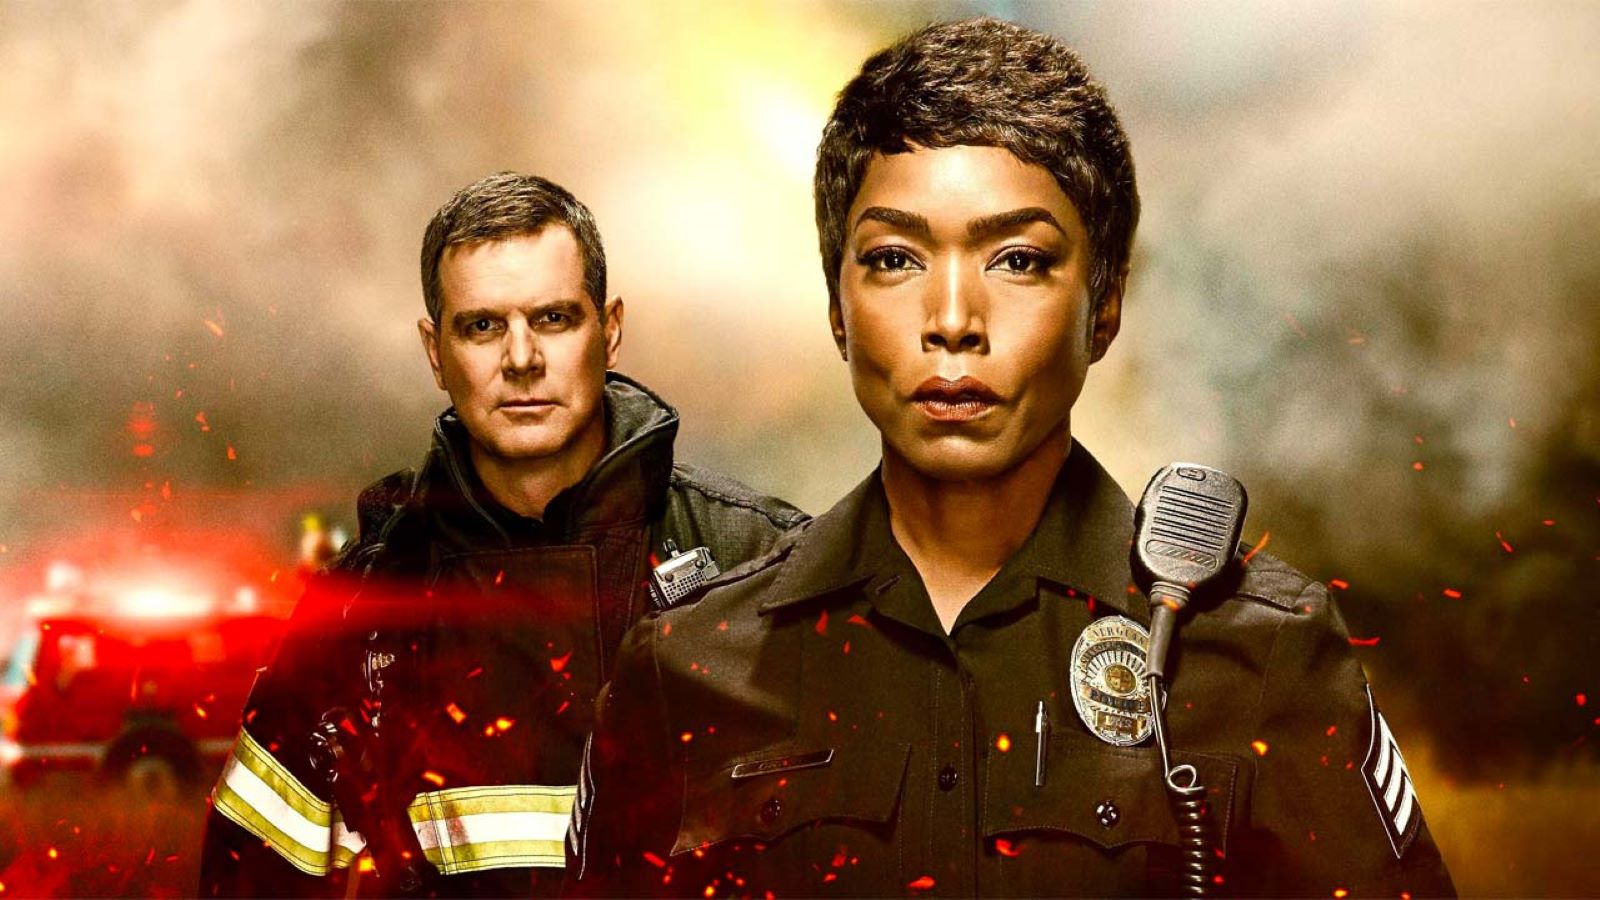 911 e lo spin-off 911: Lone Star stasera su Rai 2, trama e cast delle puntate del 7 aprile